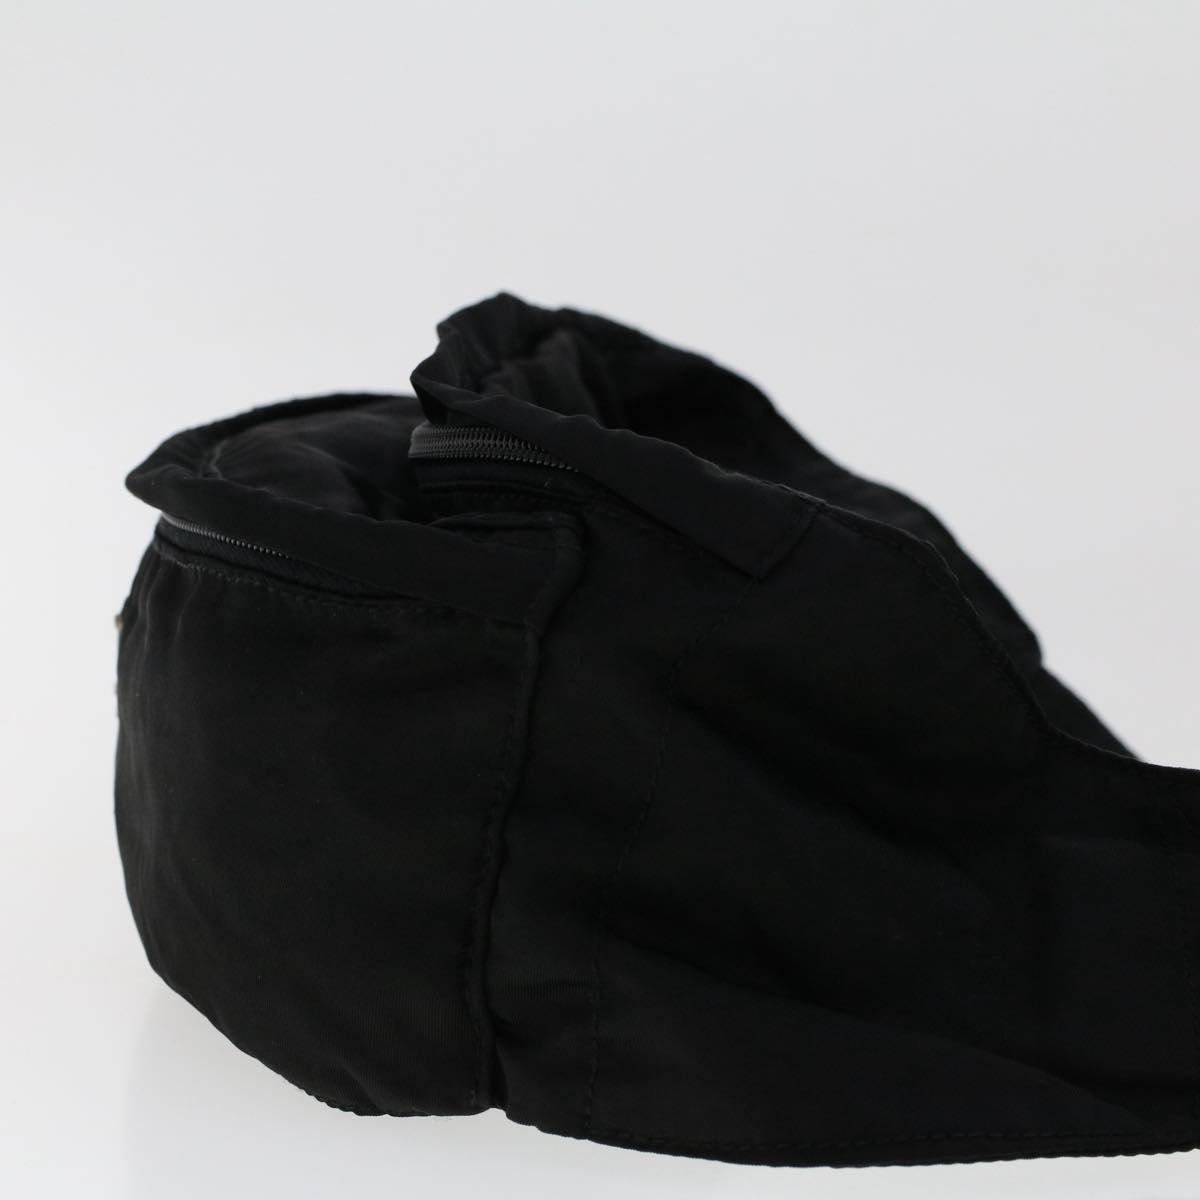 PRADA Waist bag Nylon Black Auth 50563